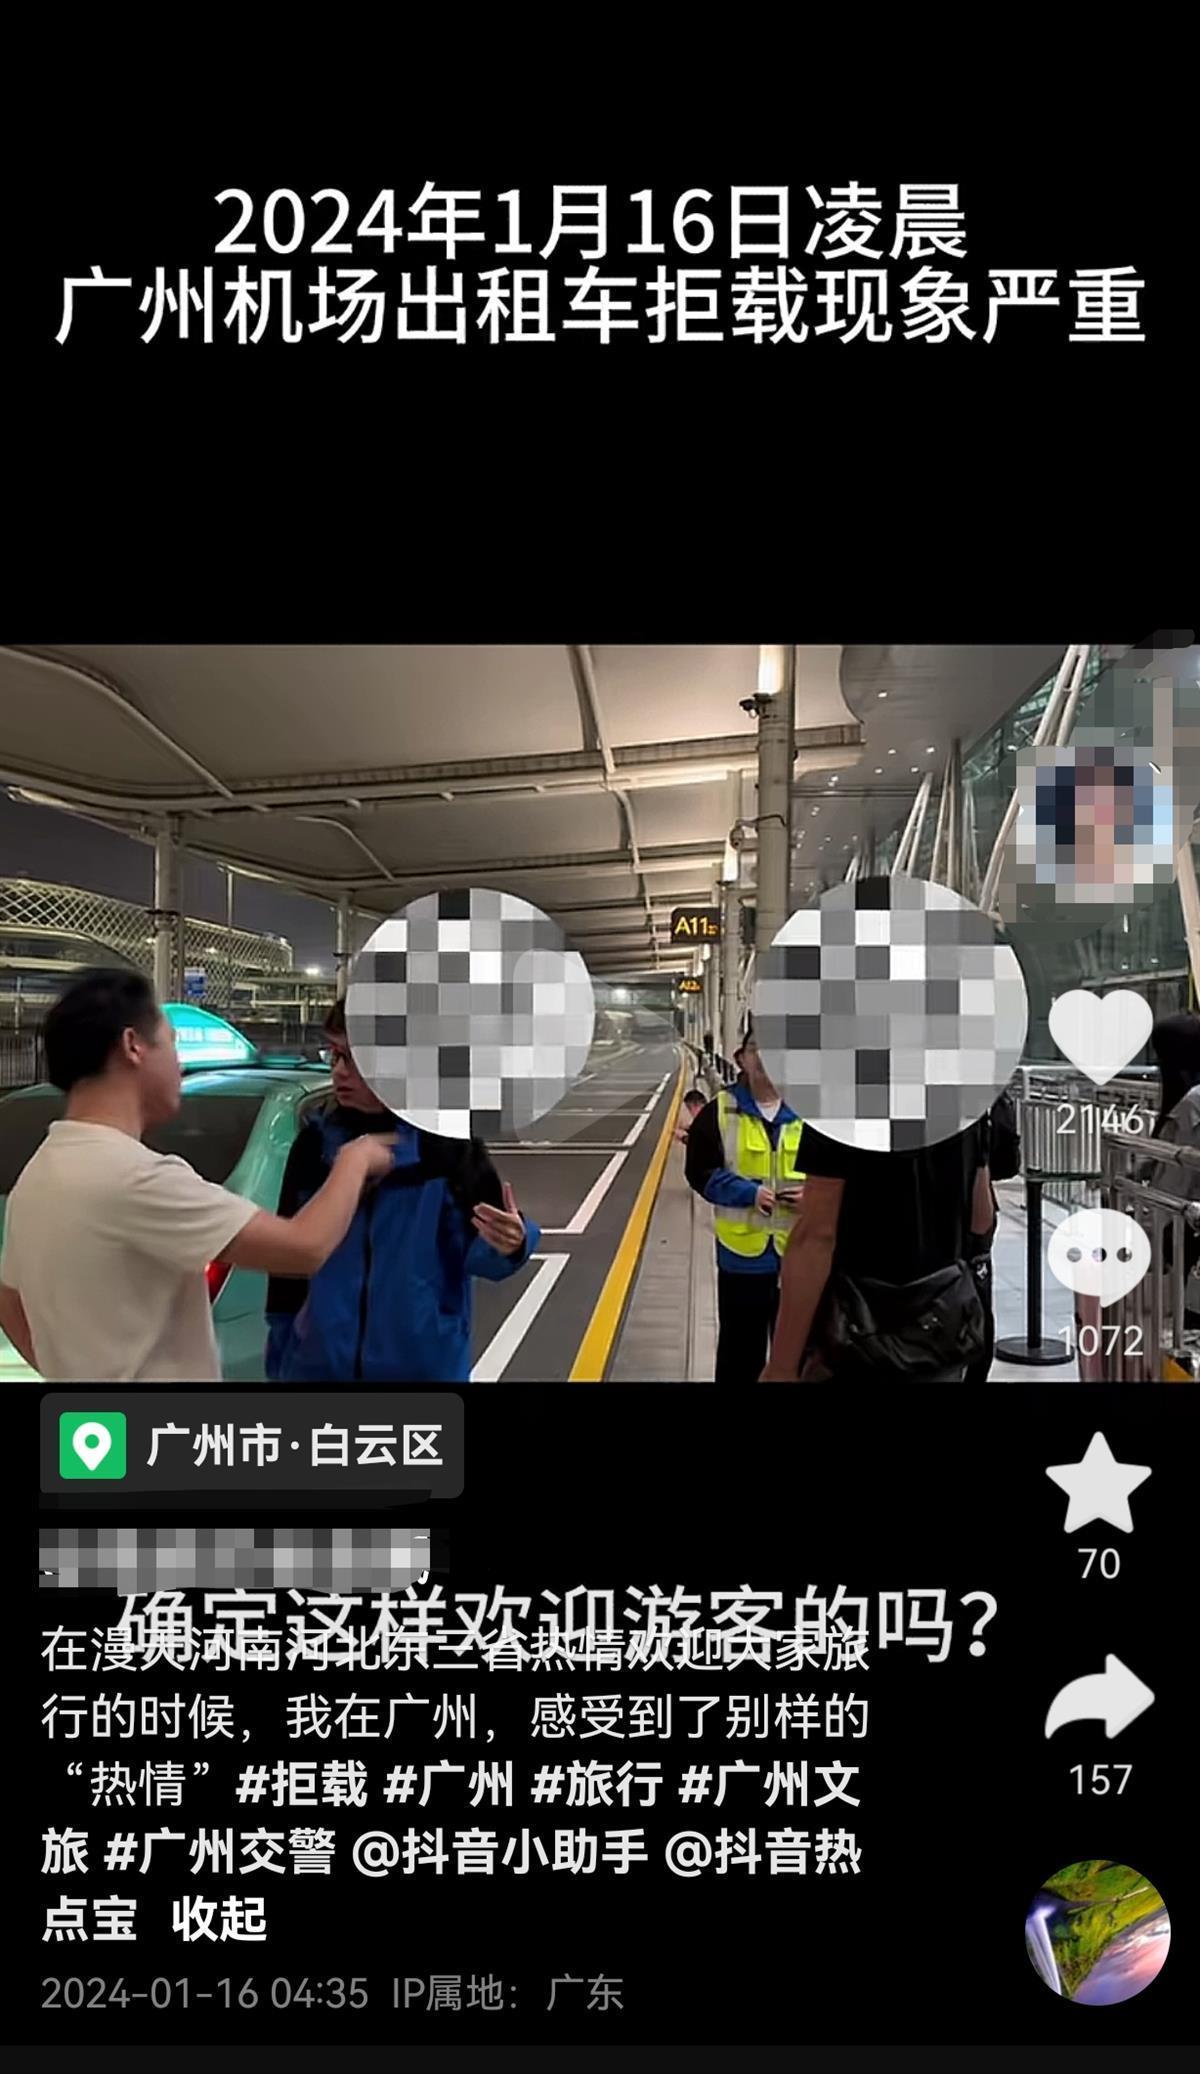 广州白云机场出租车疑拒载多名短途乘客，官方介入调查